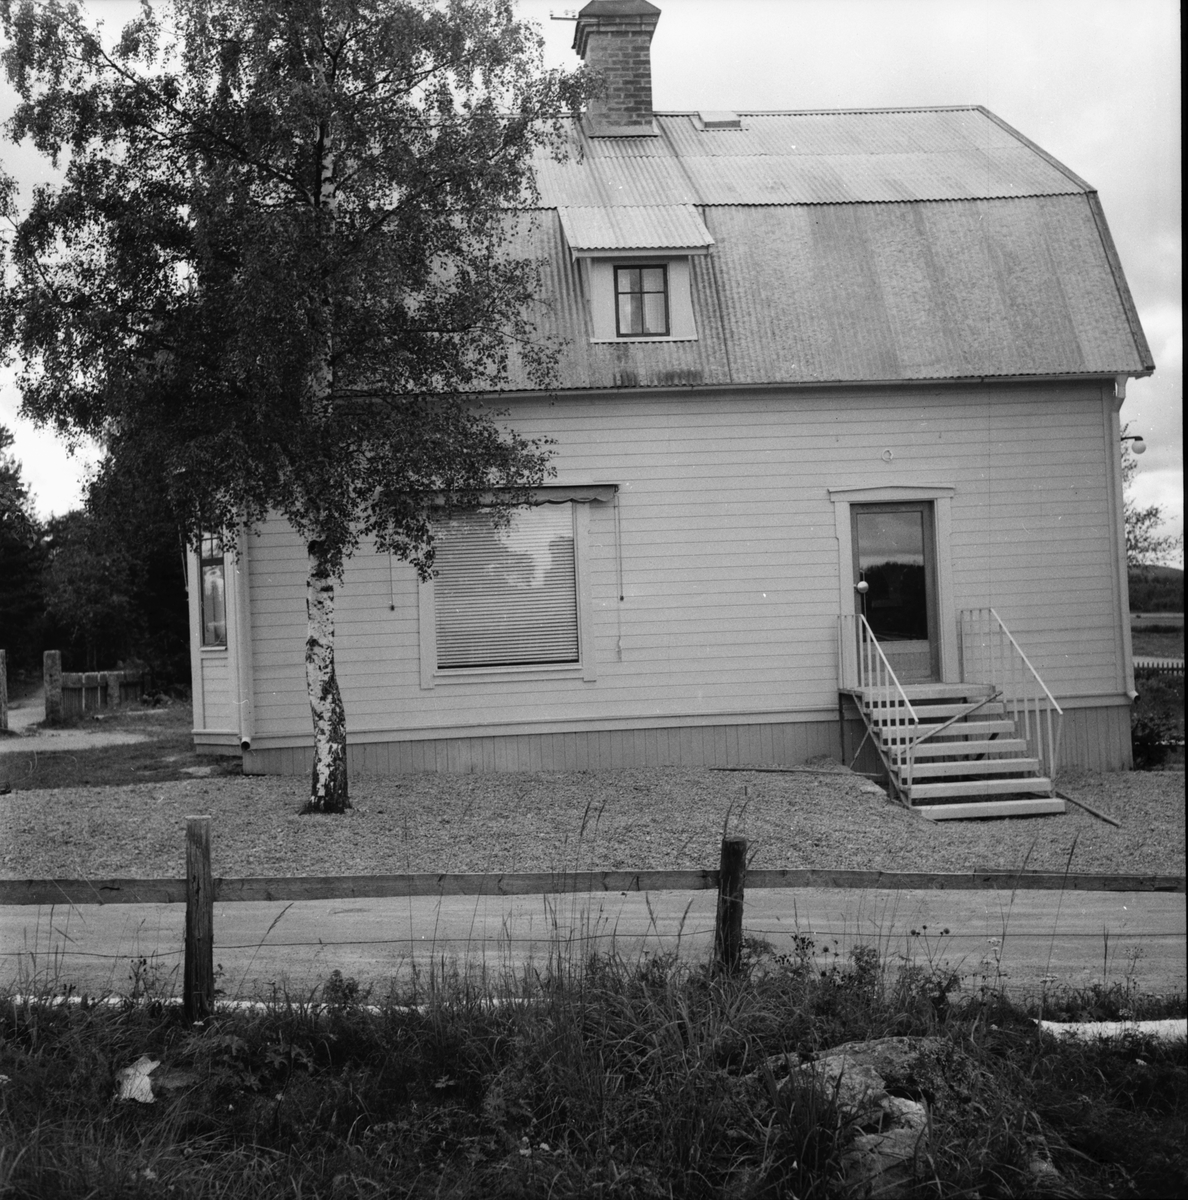 Affär som renoverats.
Hässja augusti 1956